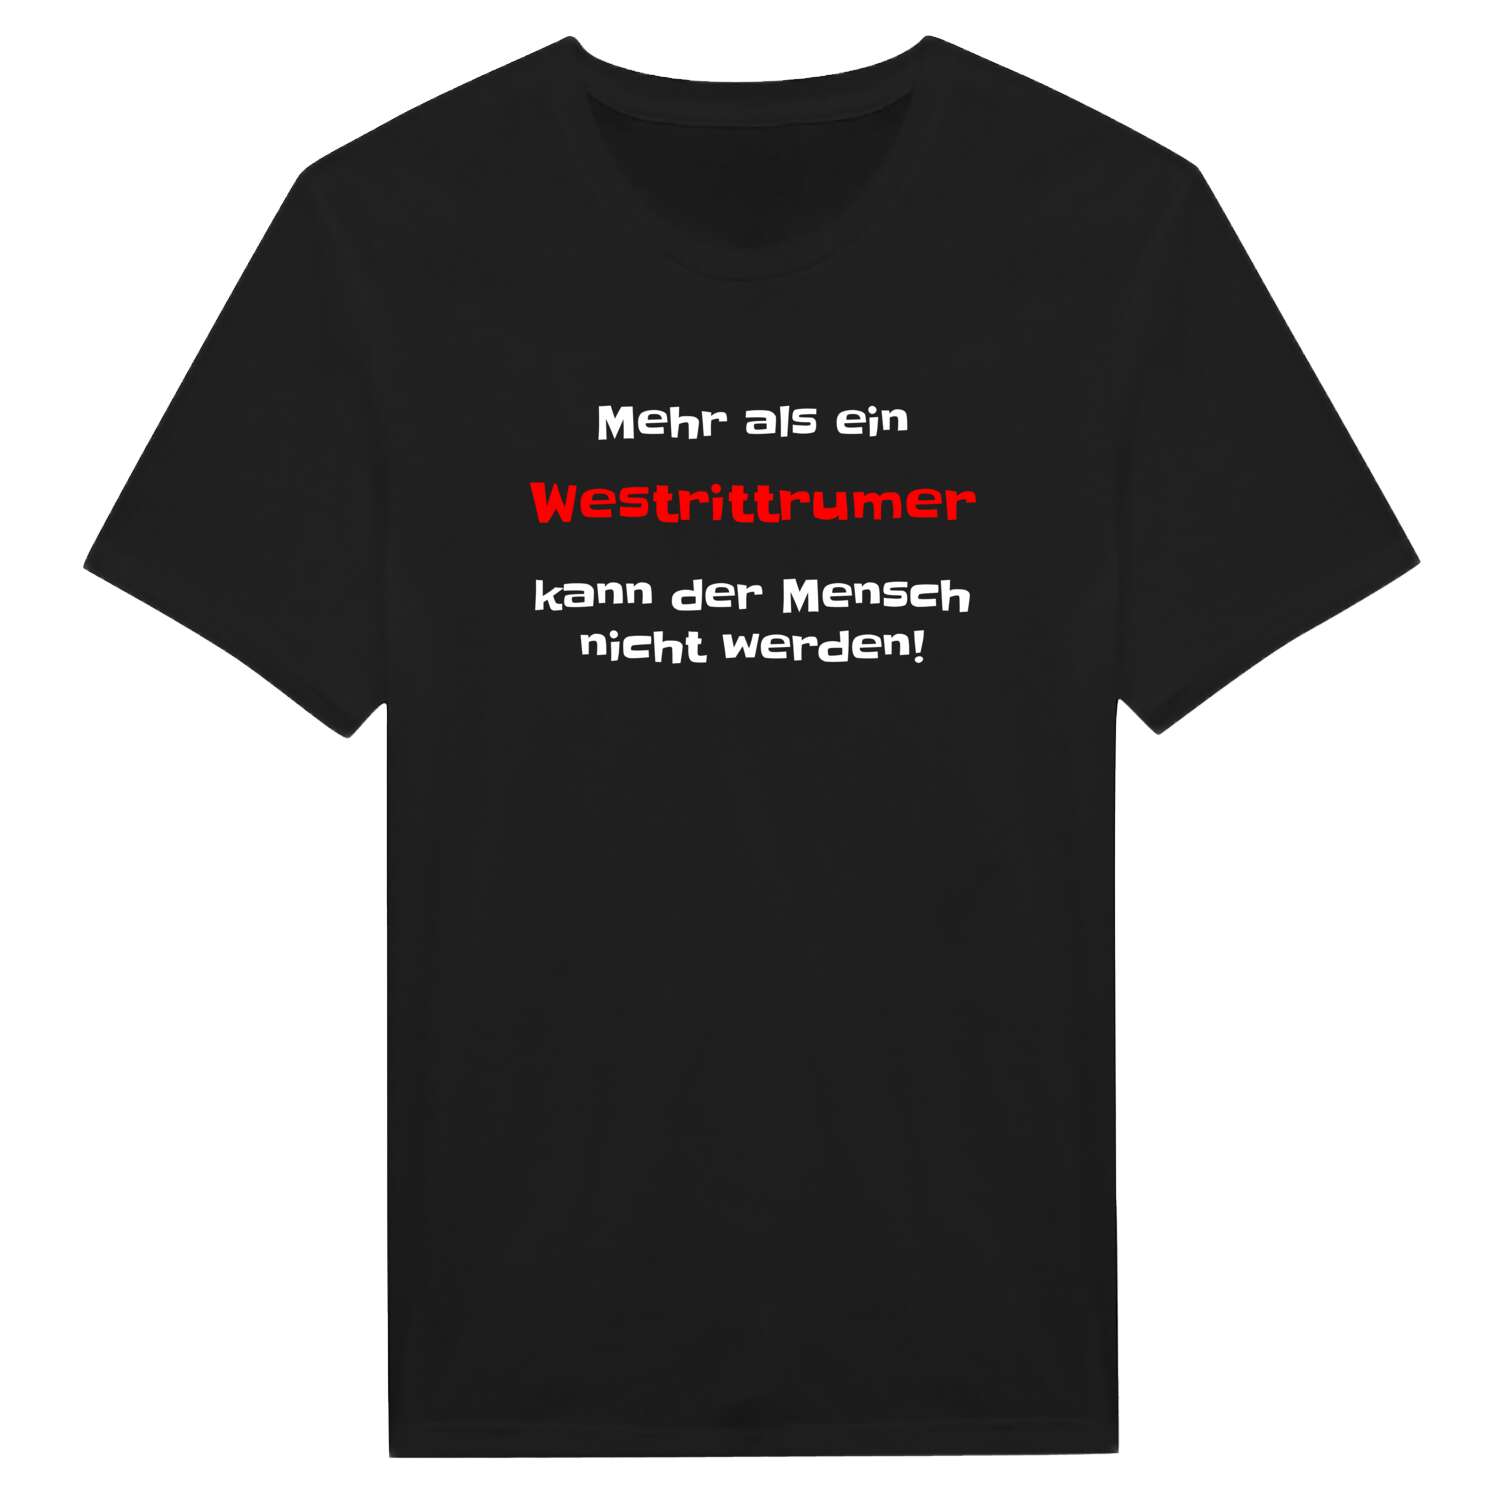 Westrittrum T-Shirt »Mehr als ein«